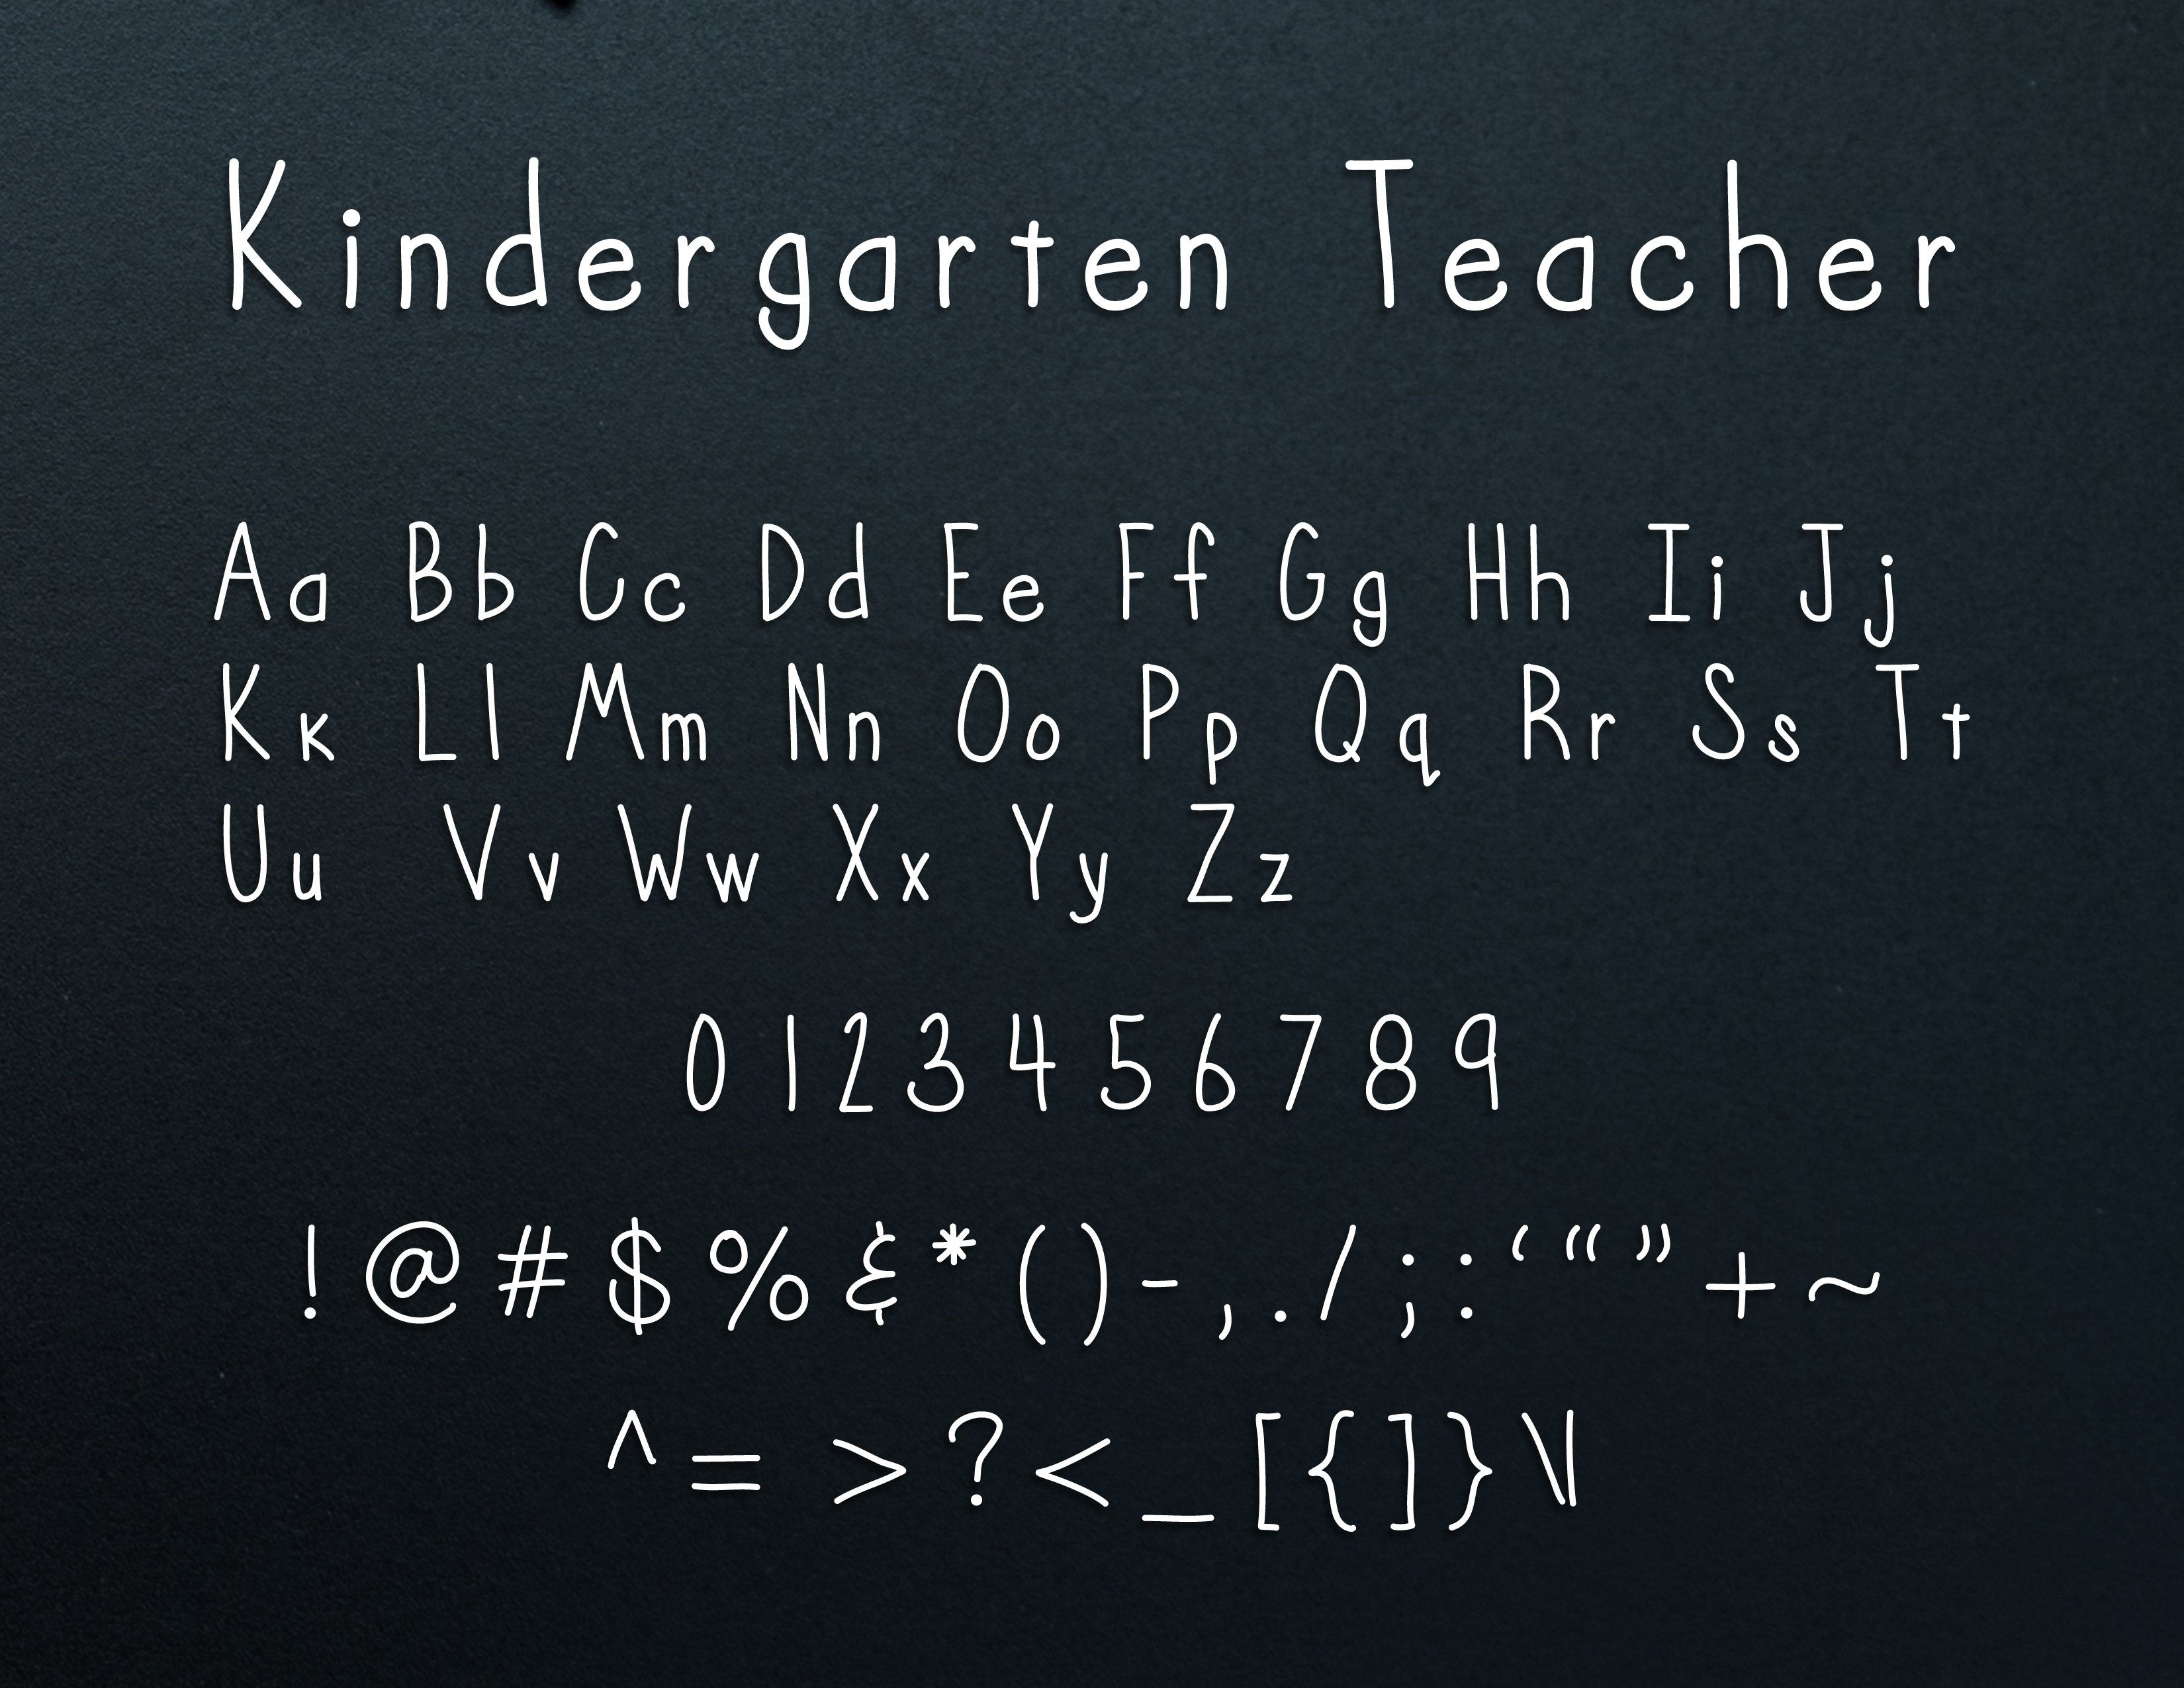 Kindergarten Teacher preview image.